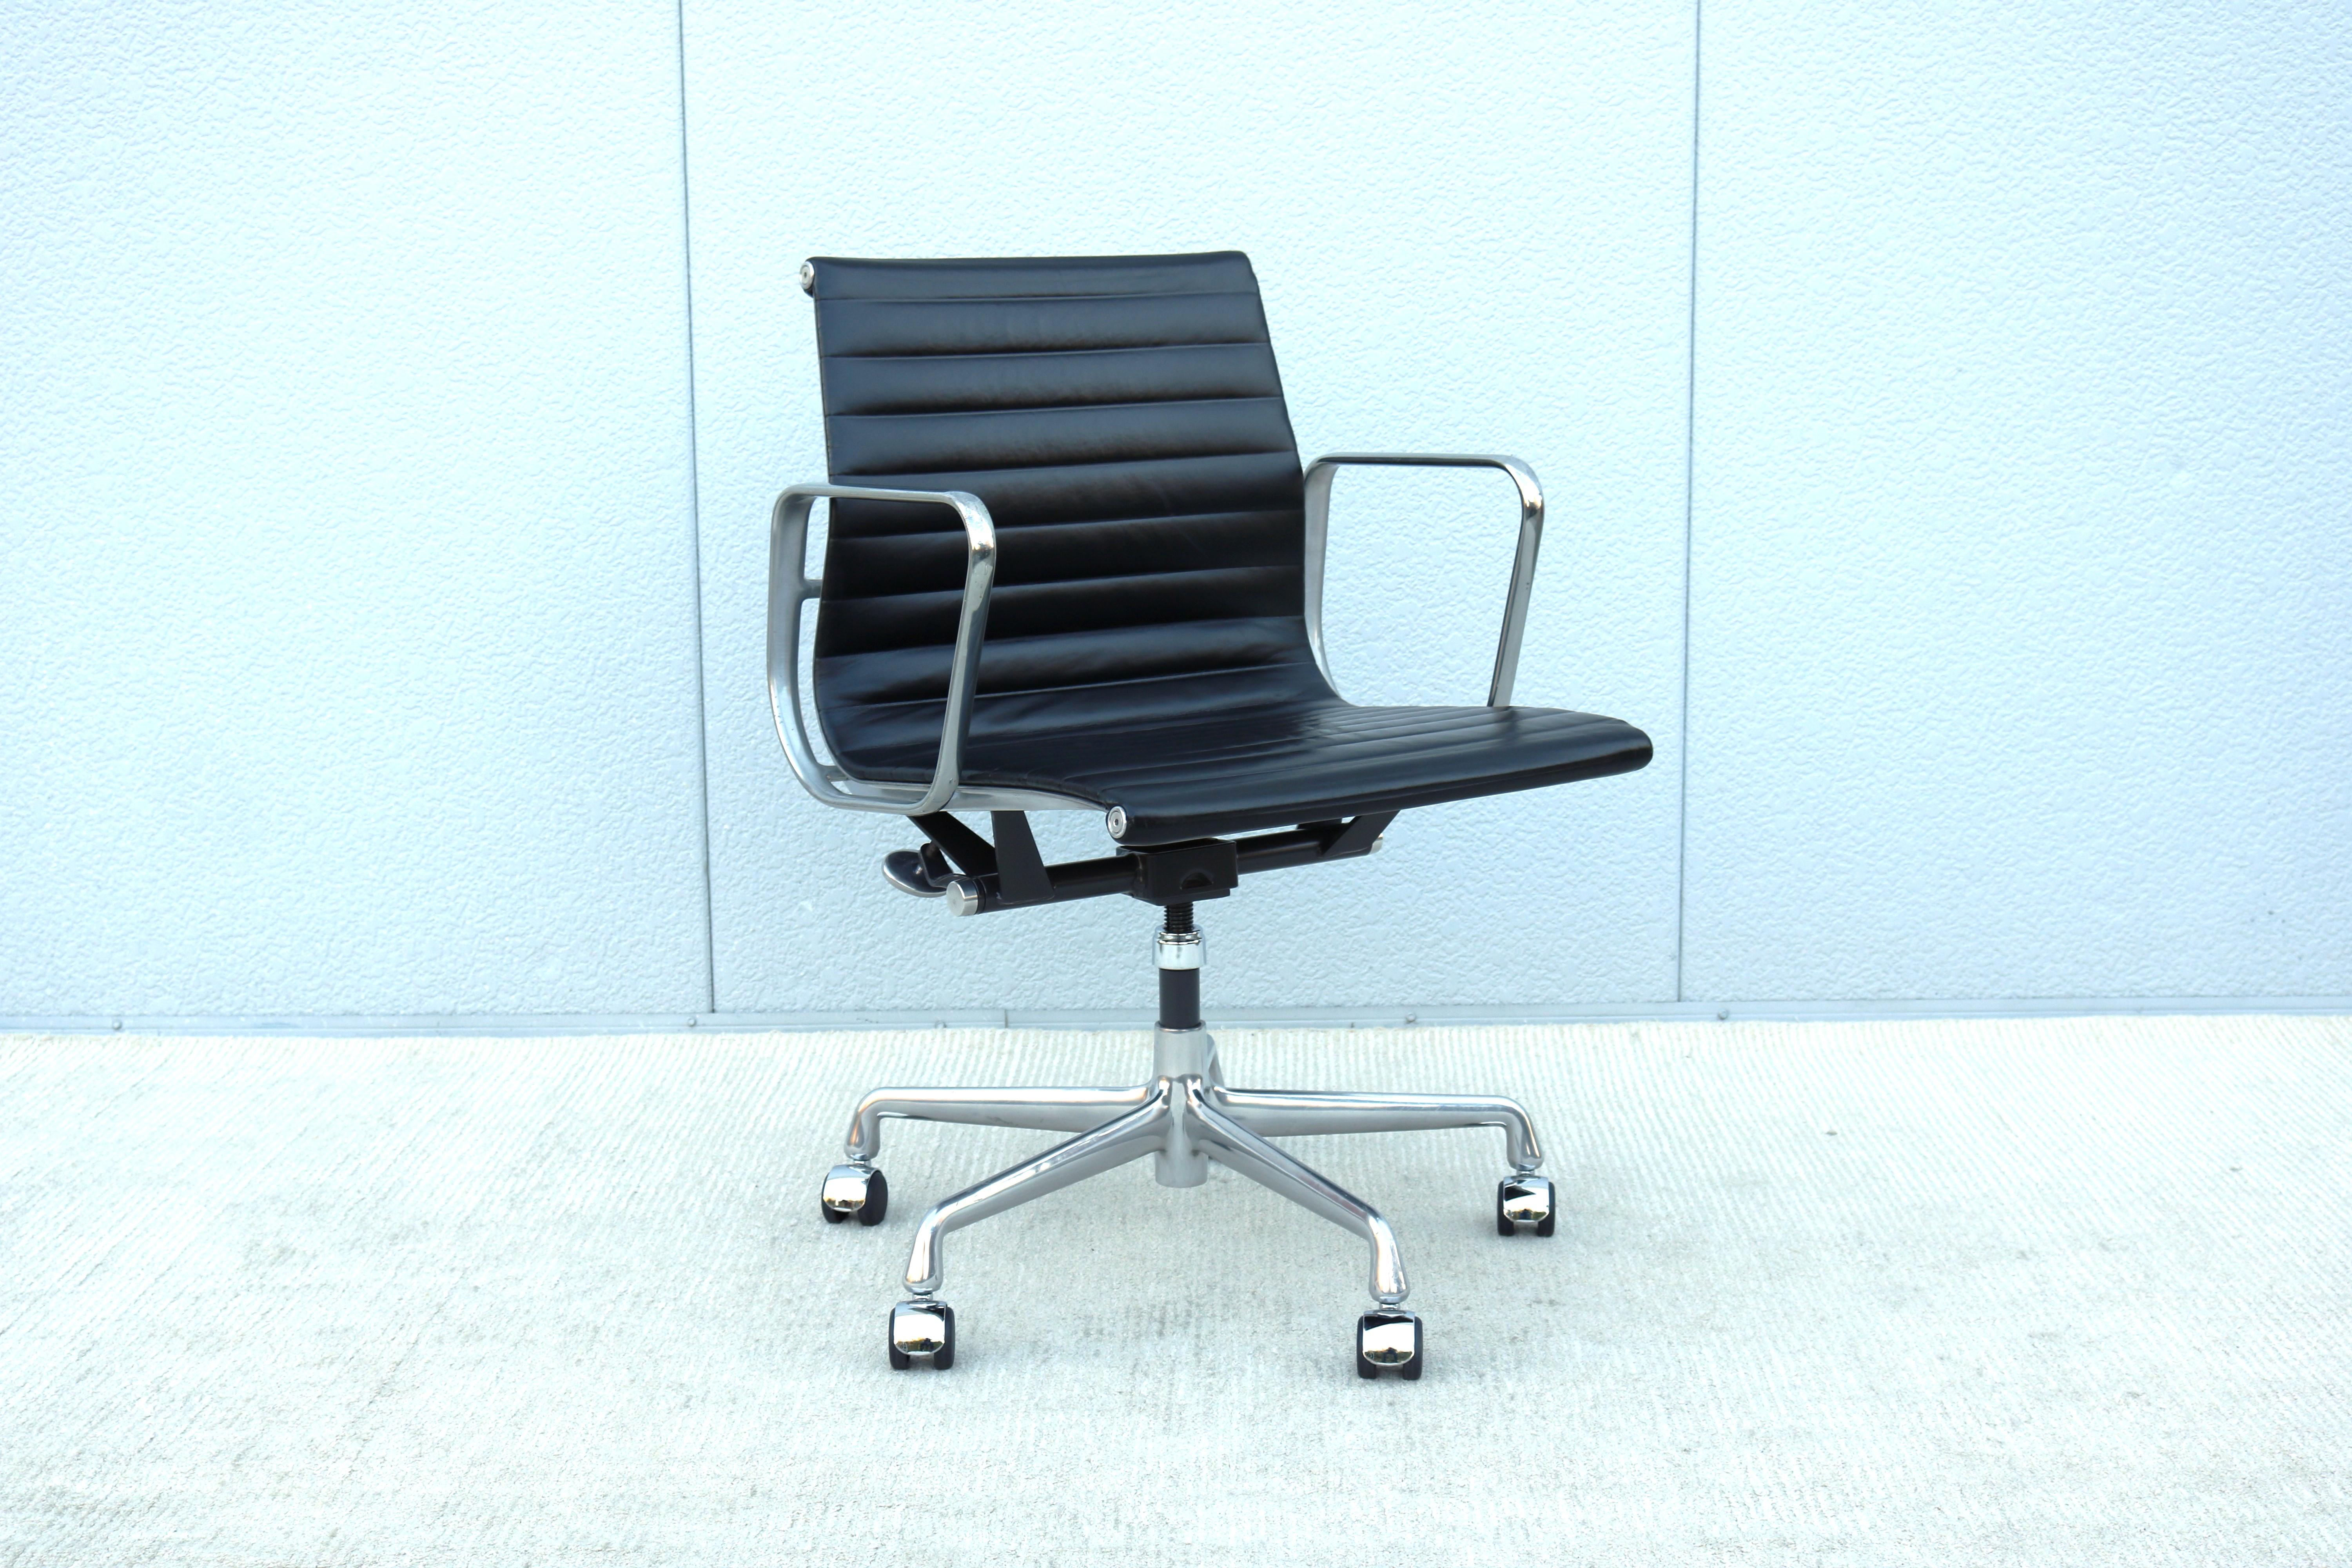 Superbe chaise de gestion de groupe Eames en aluminium, authentiquement moderne du milieu du siècle.
Un design intemporel, classique et contemporain, avec des caractéristiques de confort innovantes.
L'une des chaises les plus populaires d'Herman